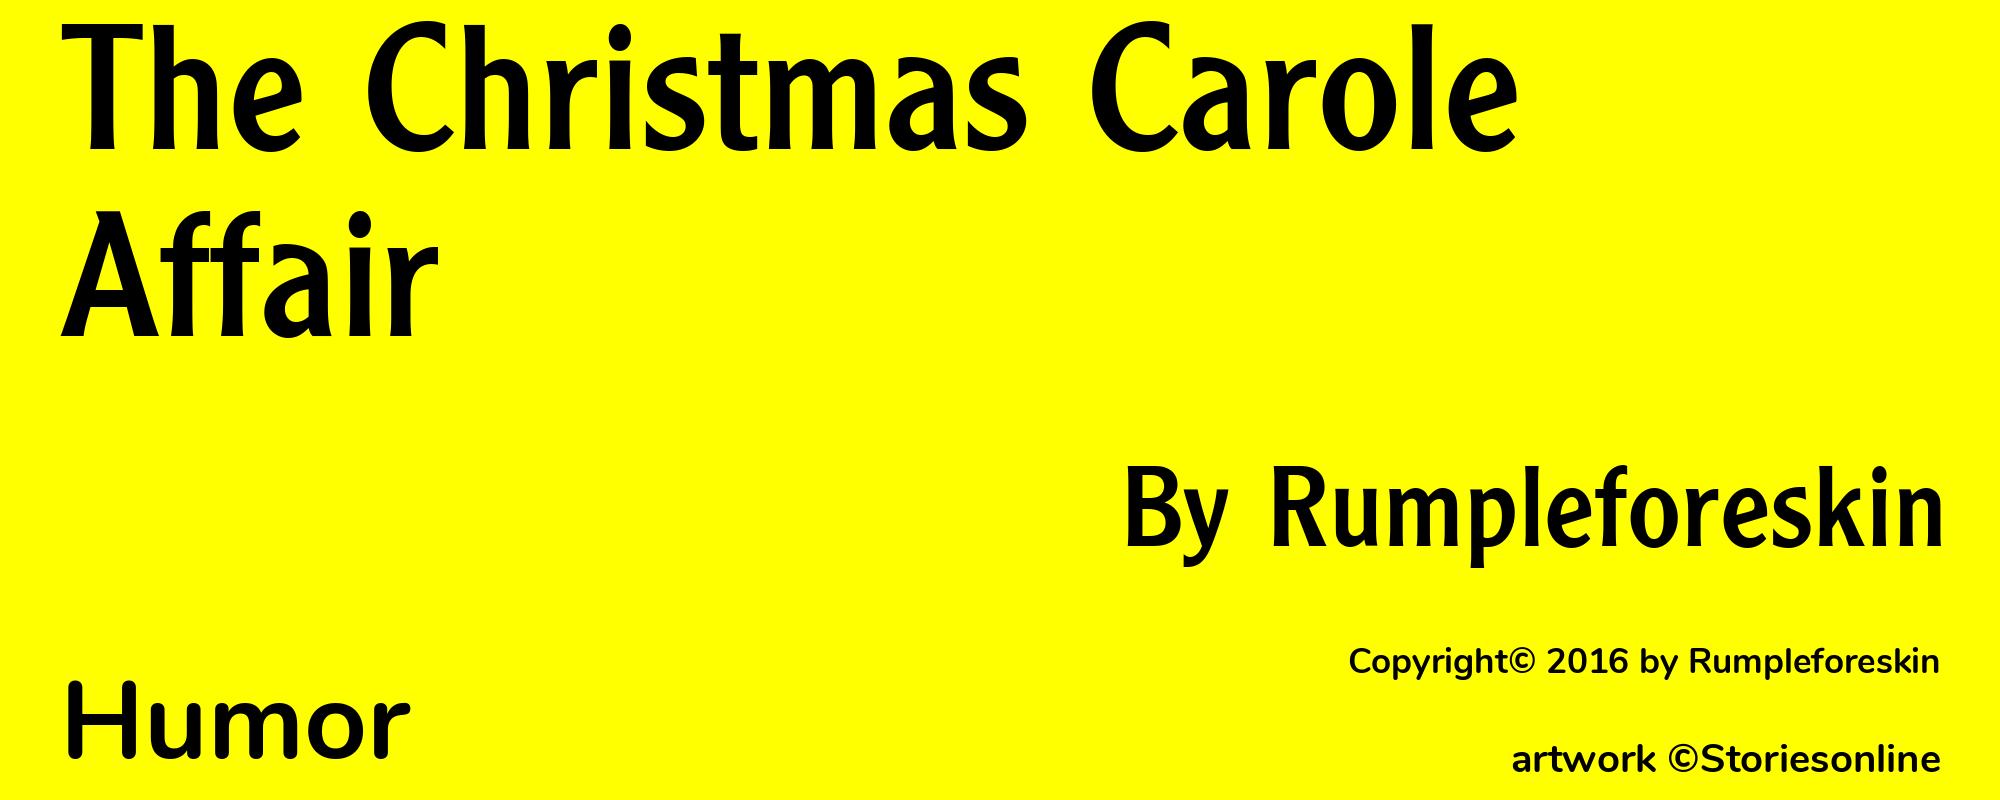 The Christmas Carole Affair - Cover